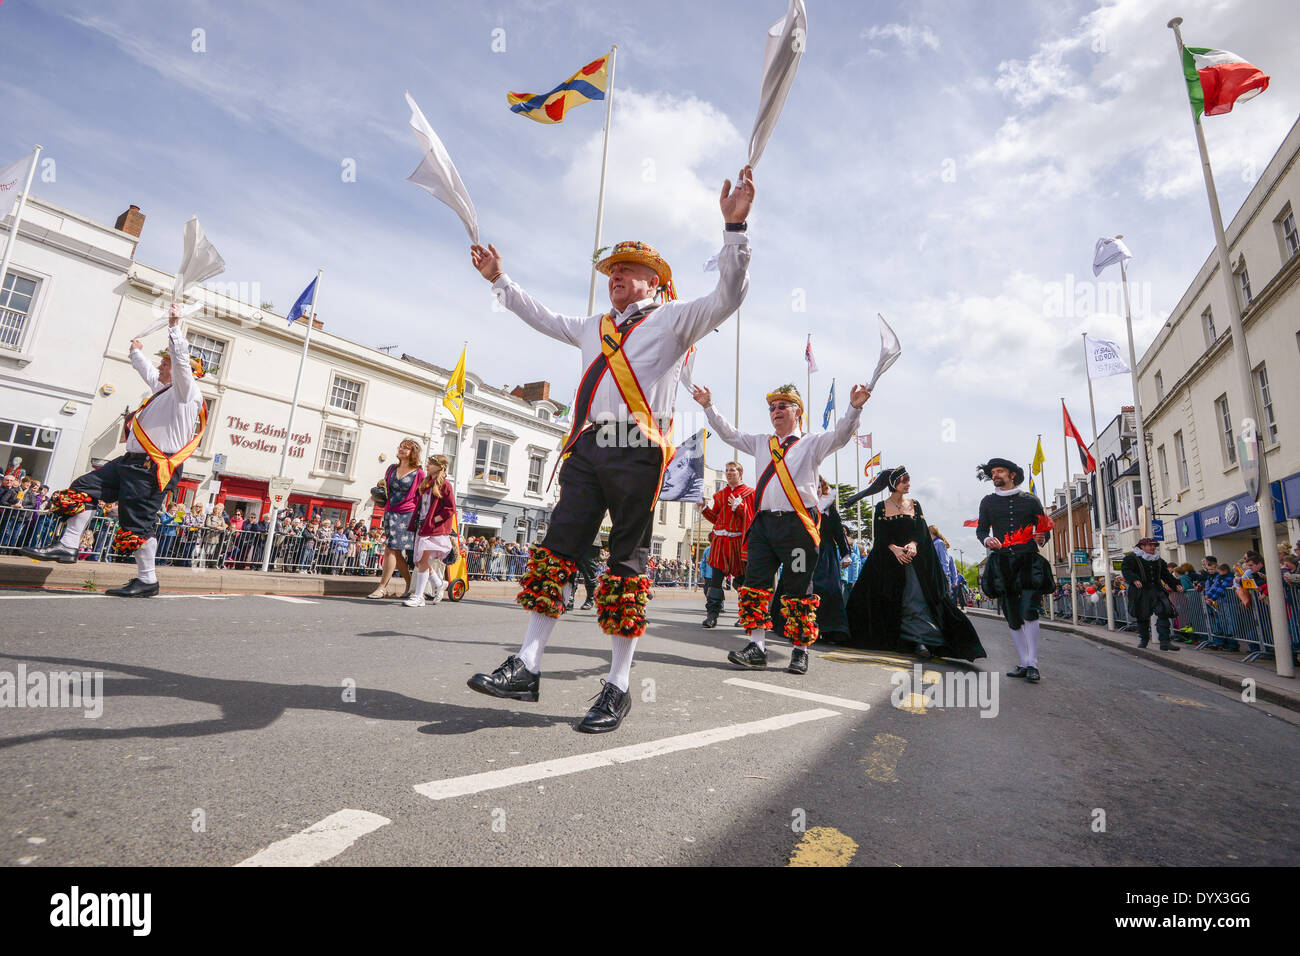 Stratford-upon-Avon, Warwickshire, Royaume-Uni. Samedi 26 avril 2014. Un défilé de carnaval et autres activités a marqué le 450e anniversaire de William Shakespeare. Morris men a diverti la foule. Crédit : Jamie Gray/Alamy Live News Banque D'Images